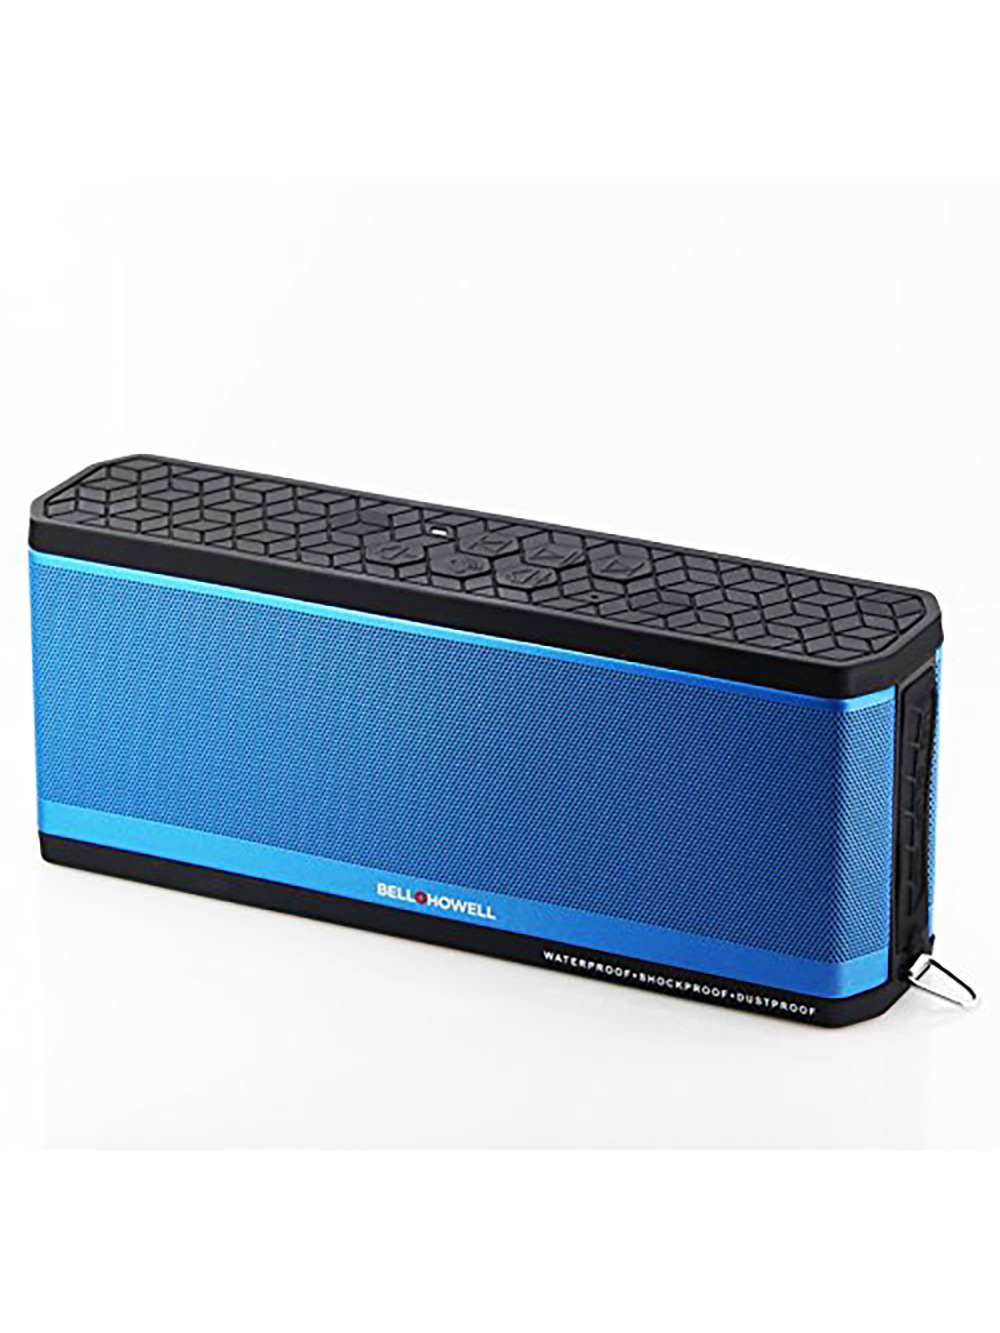 Bell+Howell bh50-r Waterproof Desktop Bluetooth Speaker